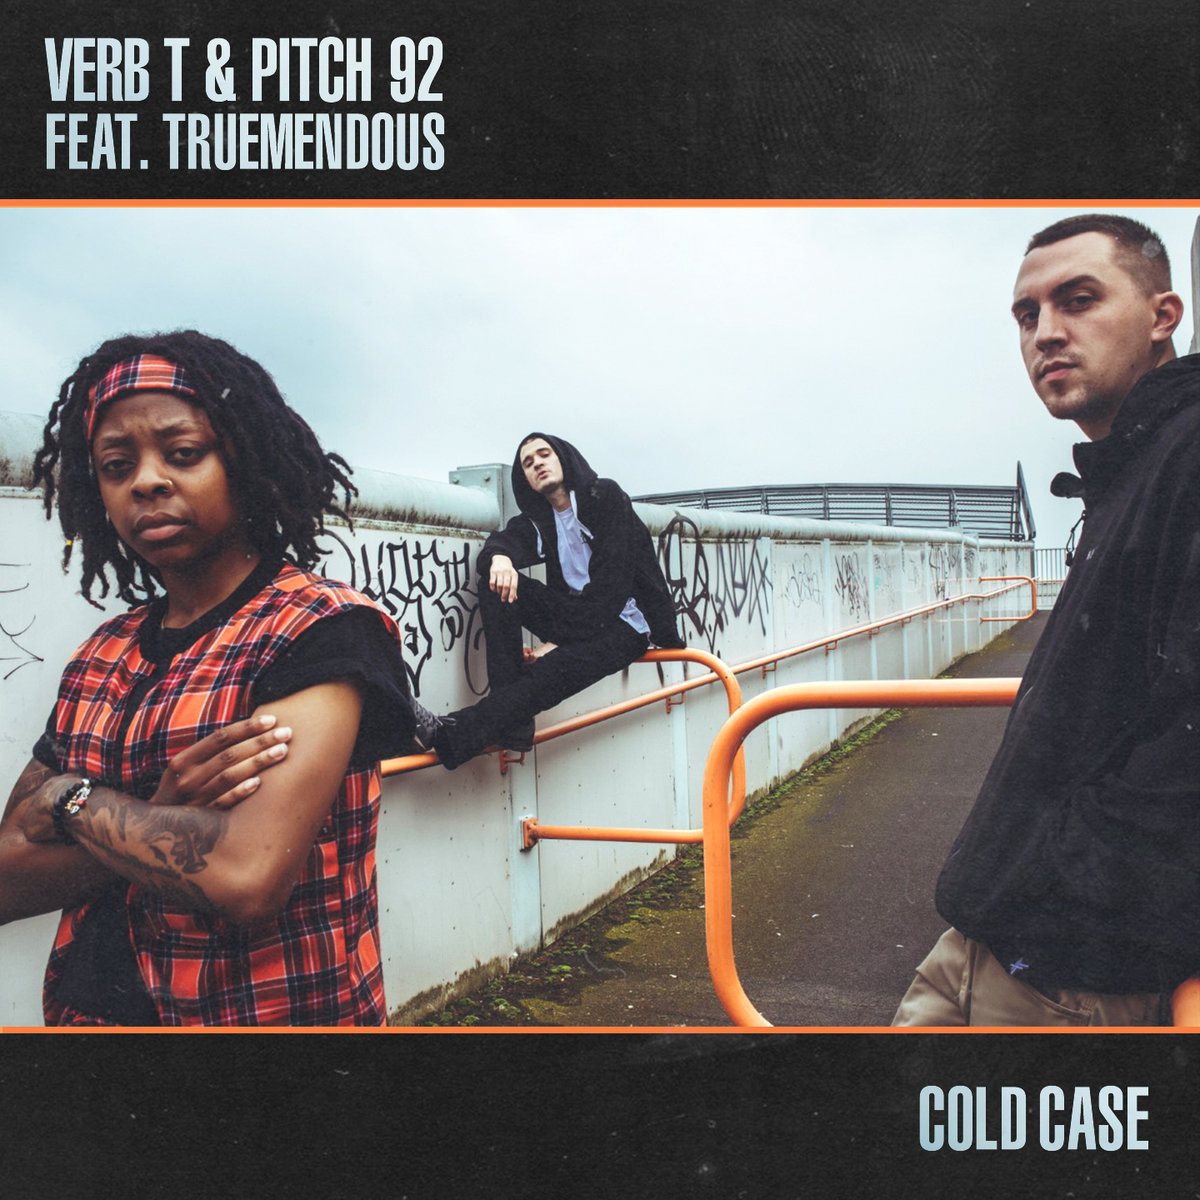 Verb_t_truemendous_pitch_92_cold_case